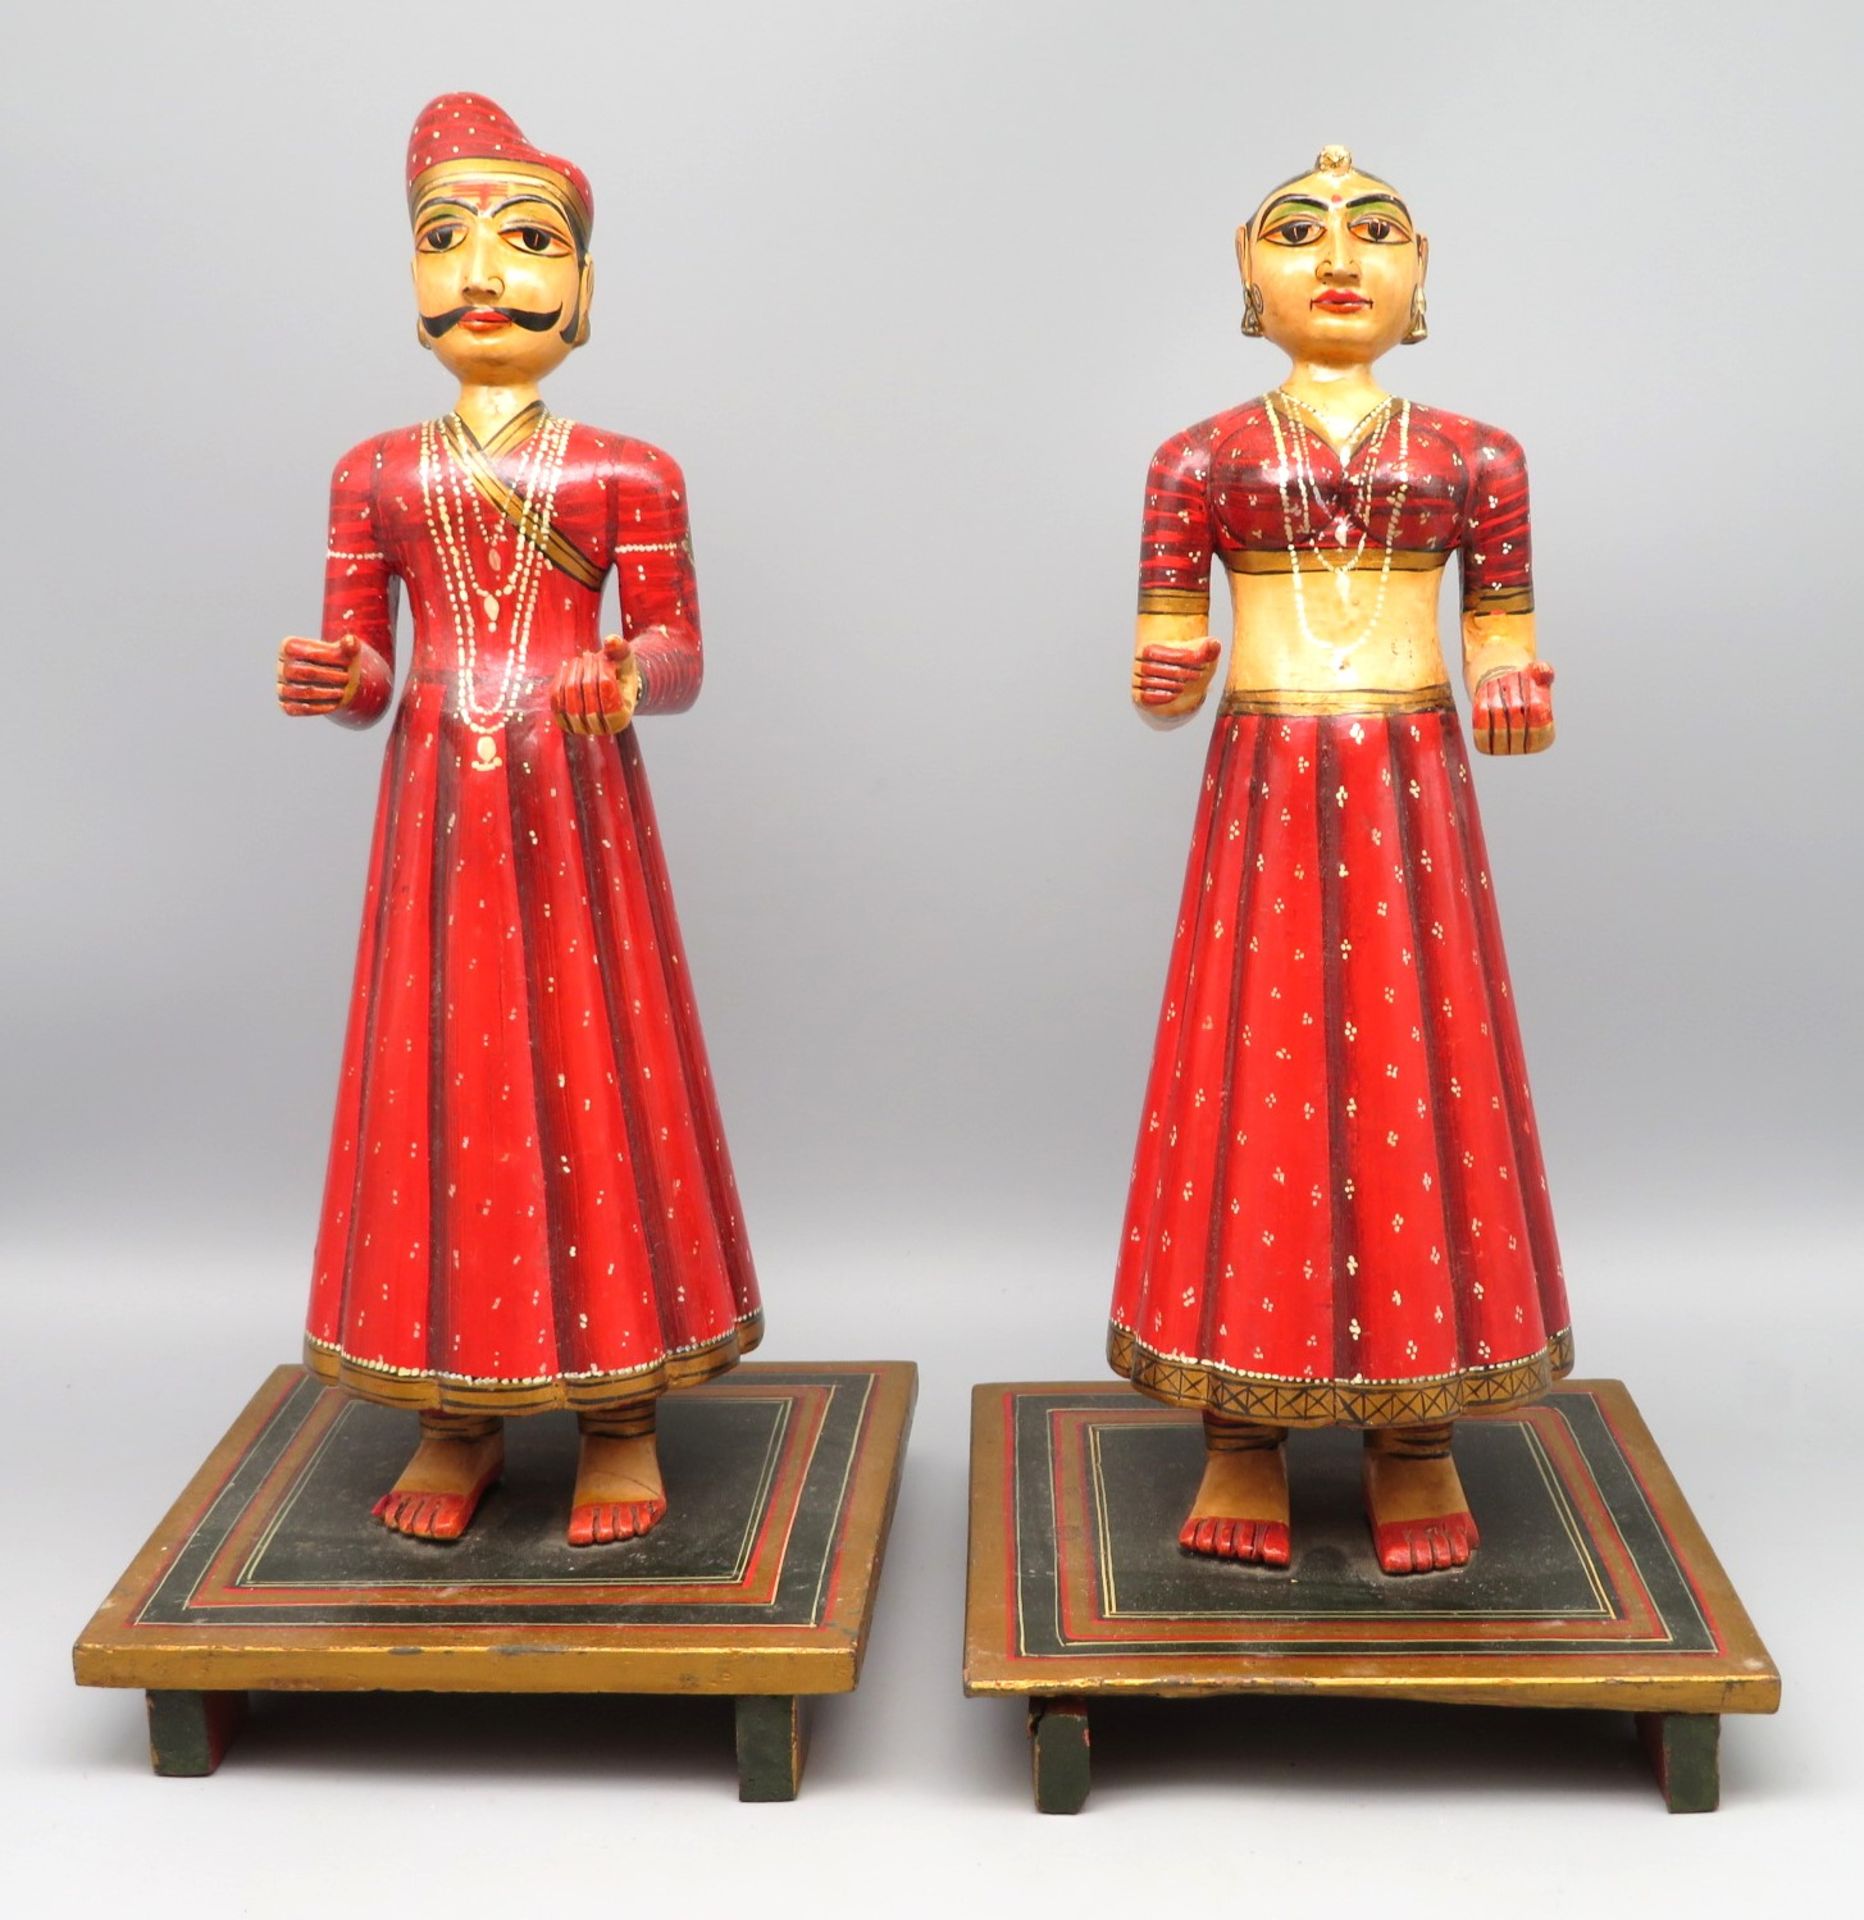 2 indische Hochzeitsfiguren, Indien, 1. Hälfte 20. Jahrhundert, Holz geschnitzt, farbig bemalt, qua